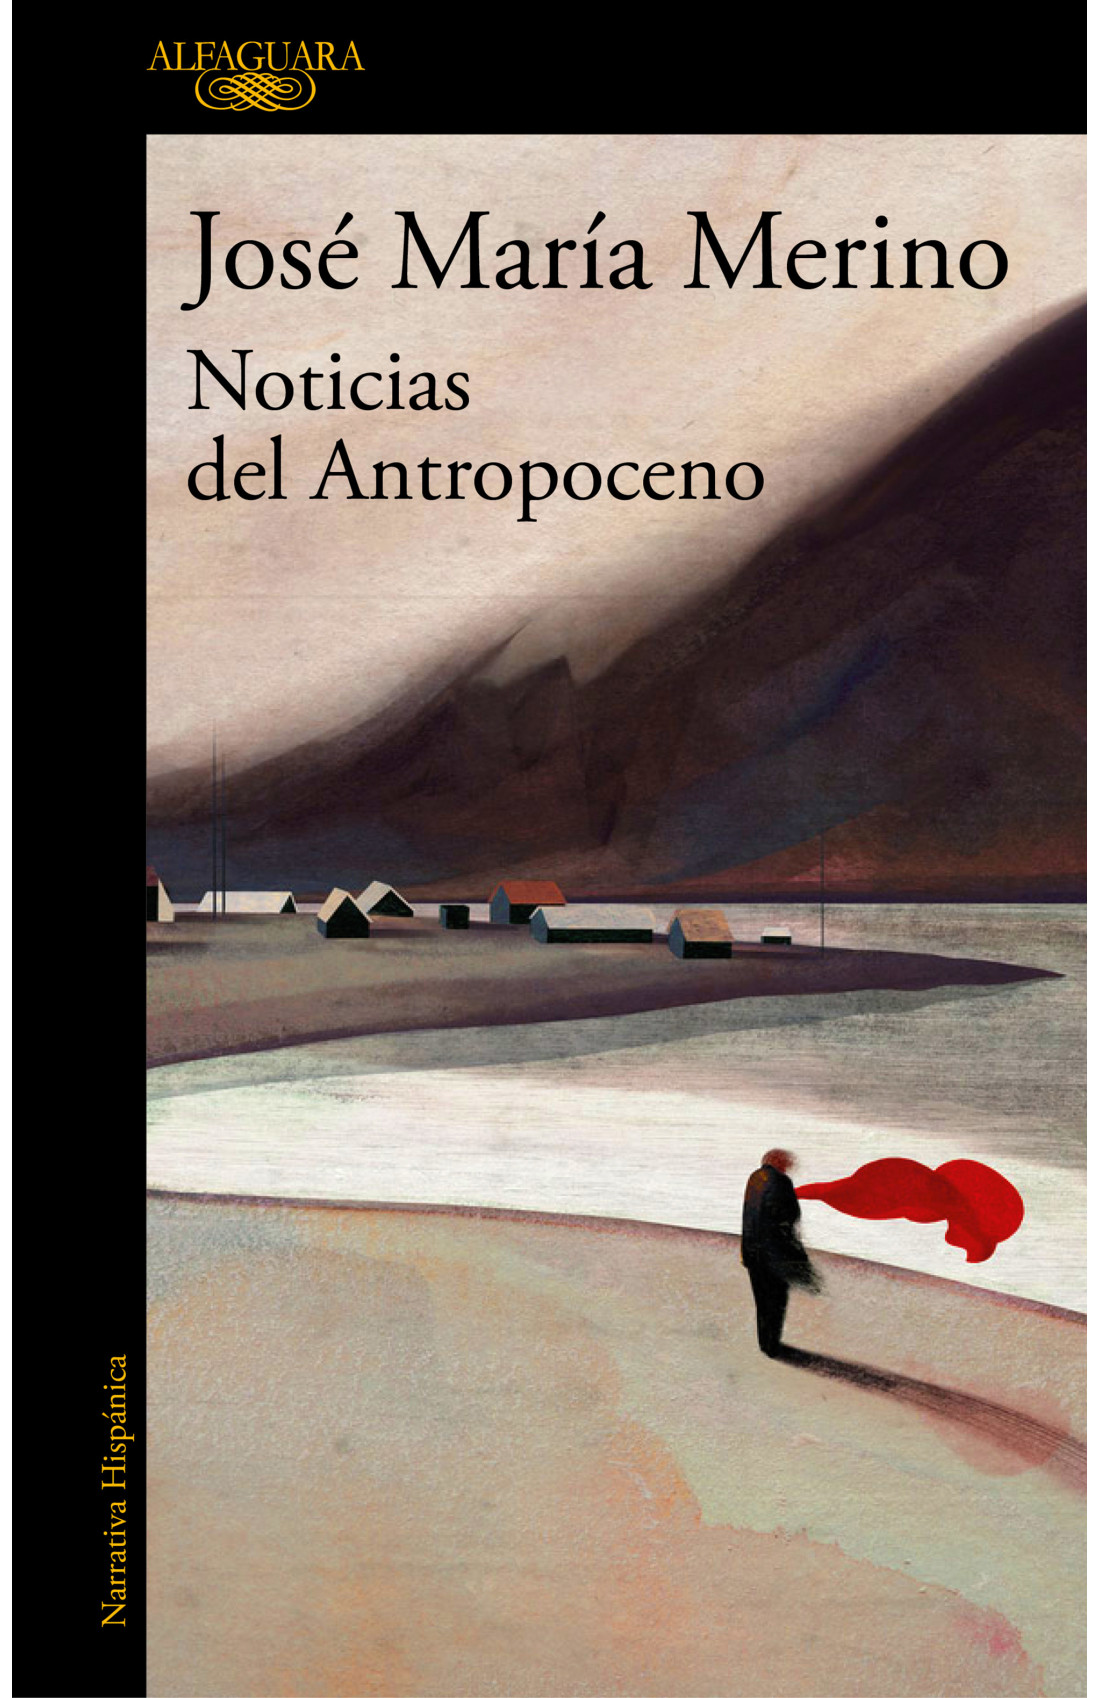 Portada de 'Noticias del Antropoceno', de José María Merino